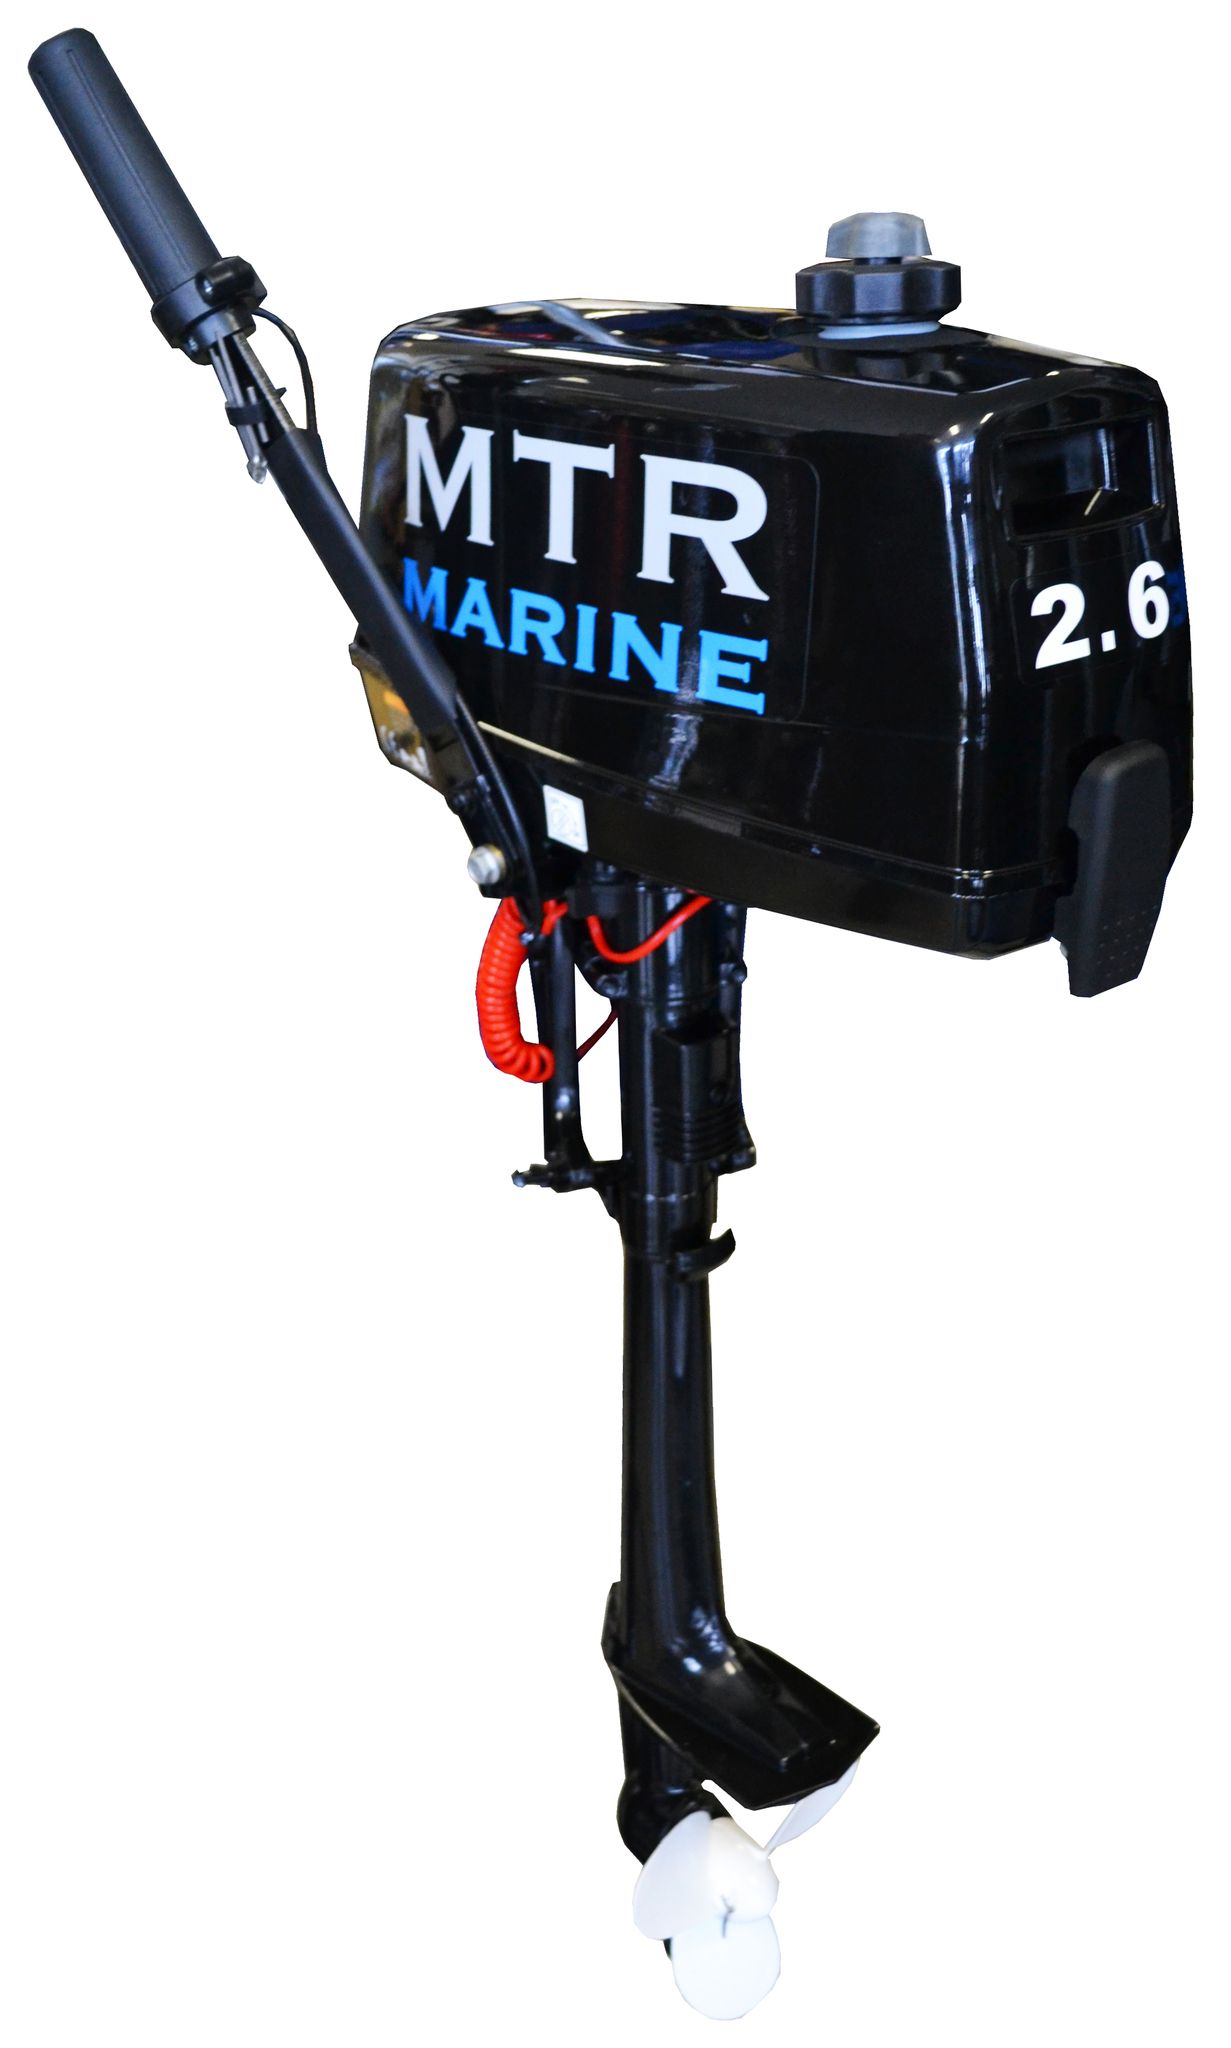 Купить лодочный мотор марине. Лодочный мотор МТР Марине 2.6. Лодочный мотор MTR Marine t 2.6 BMS. Лодочный мотор Parsun t2.6BMS. Лодочный мотор MTR Marine 5.